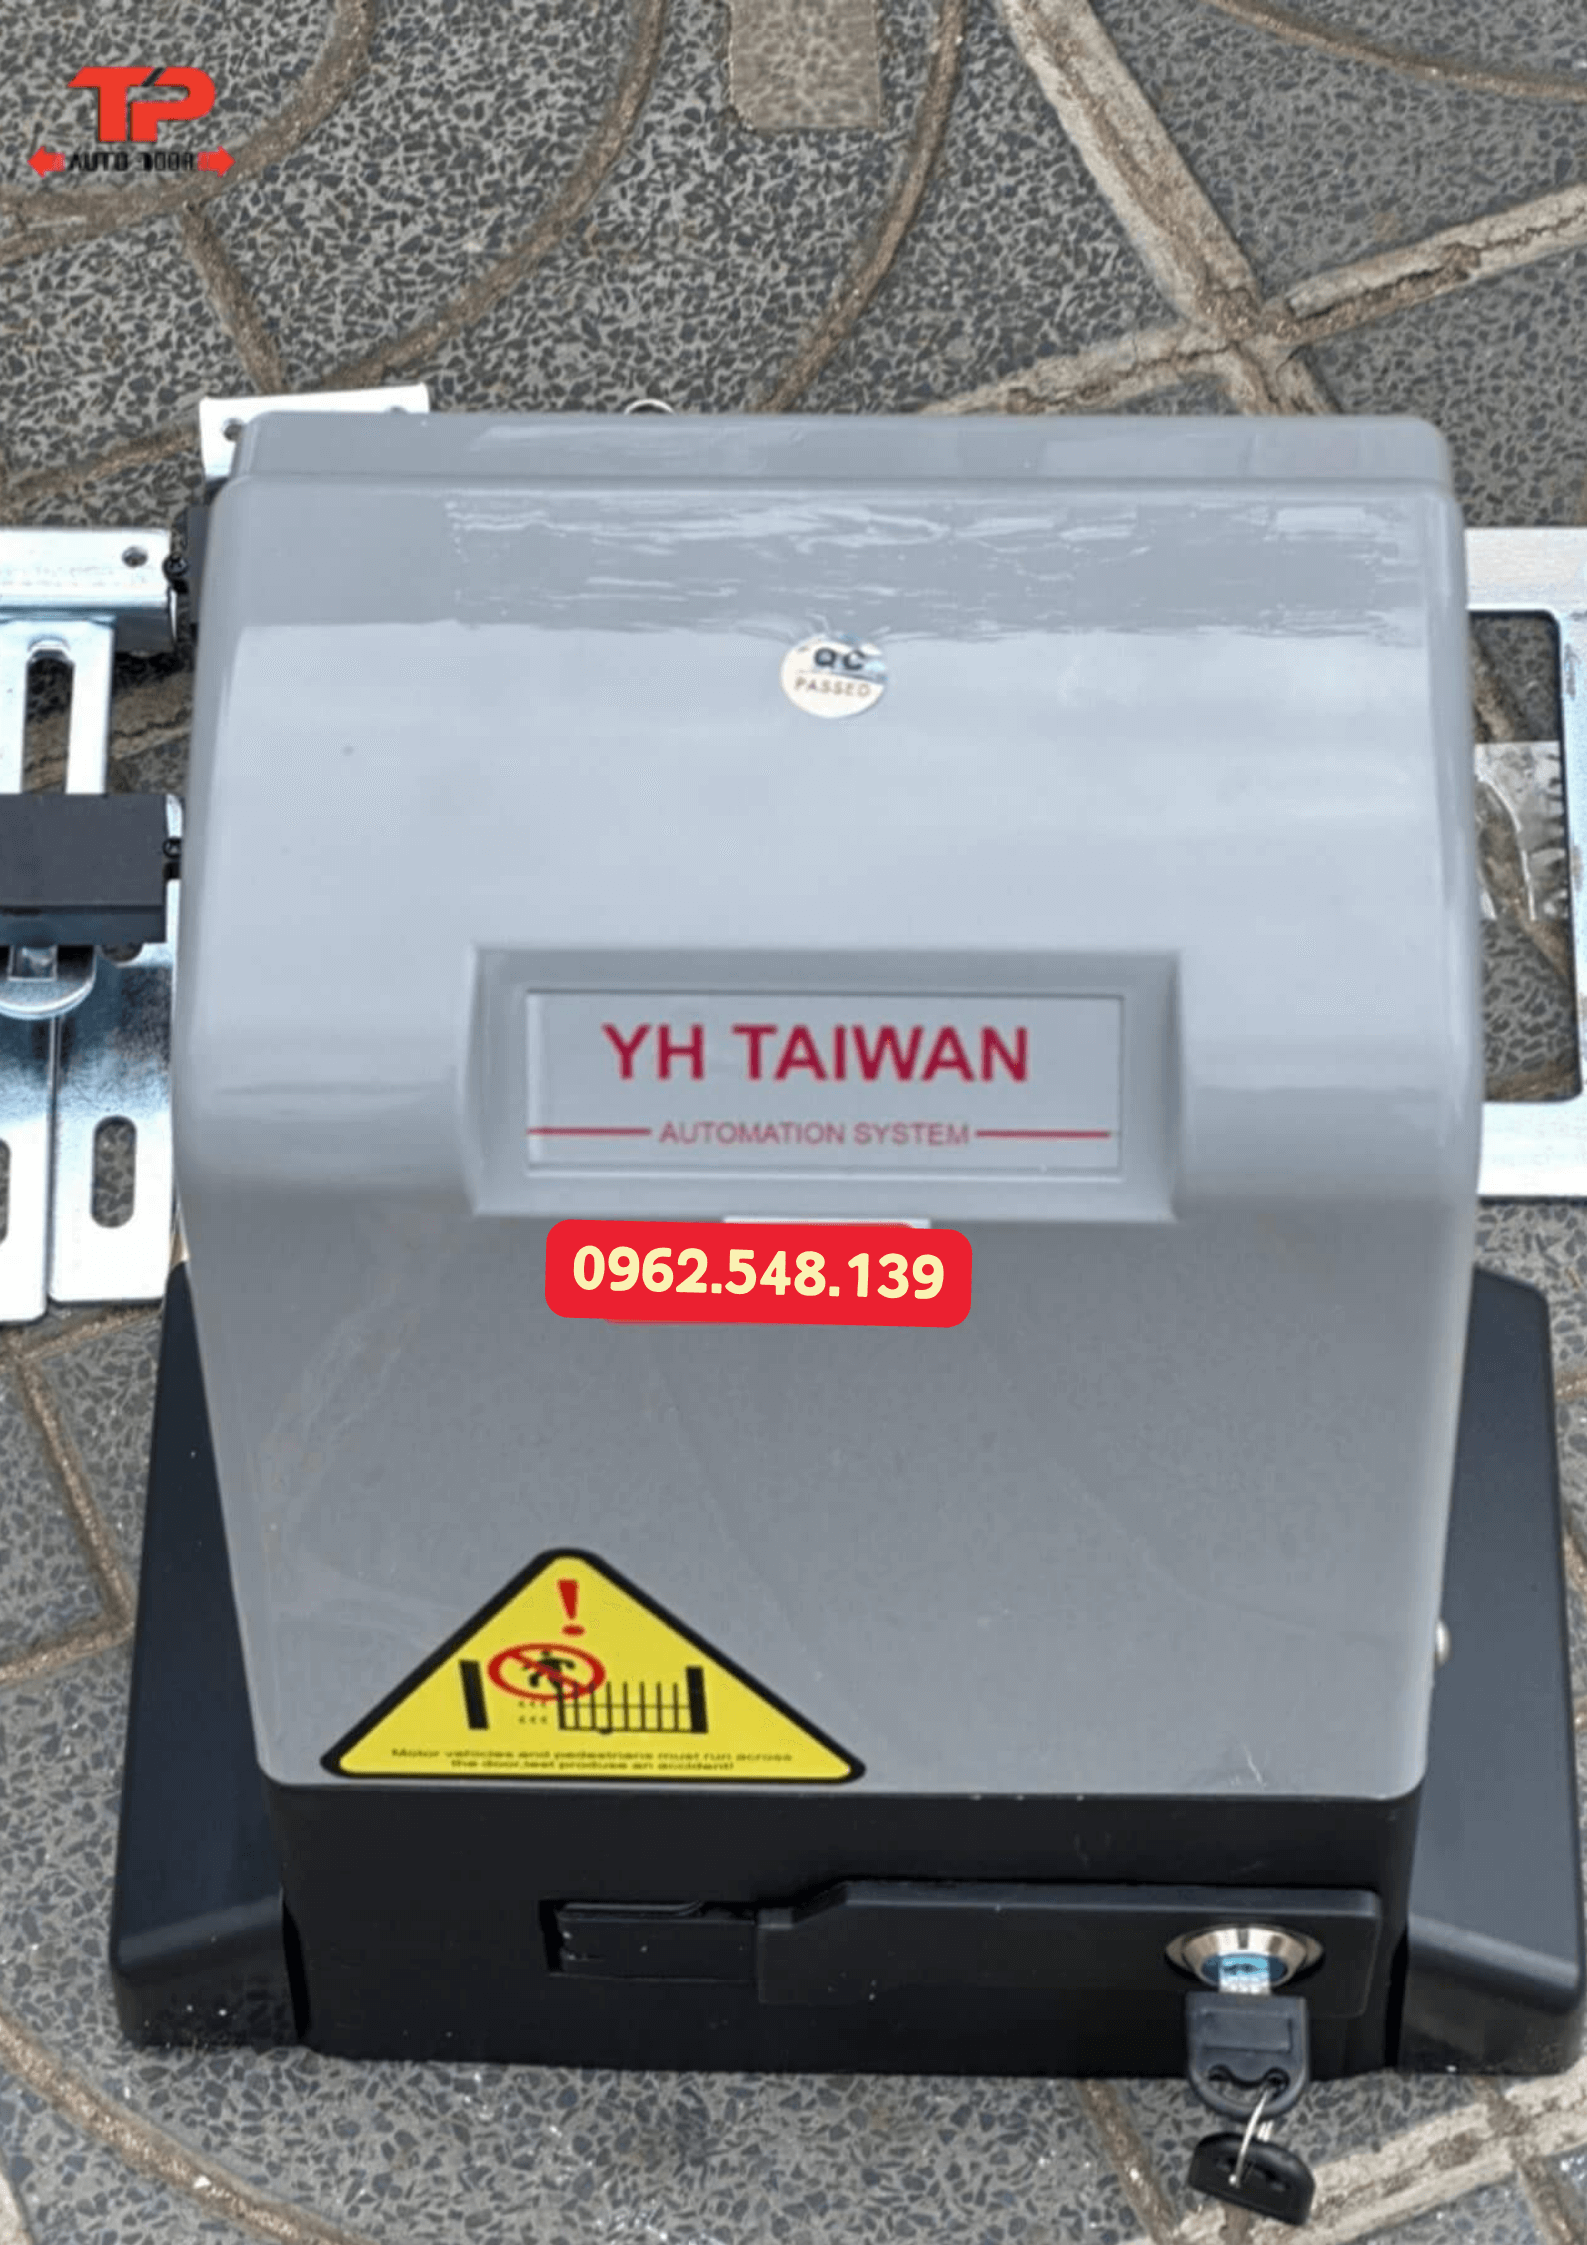 YH Taiwan - motor cổng lùa giá rẻ chỉ từ 2,9 triệu/ bộ